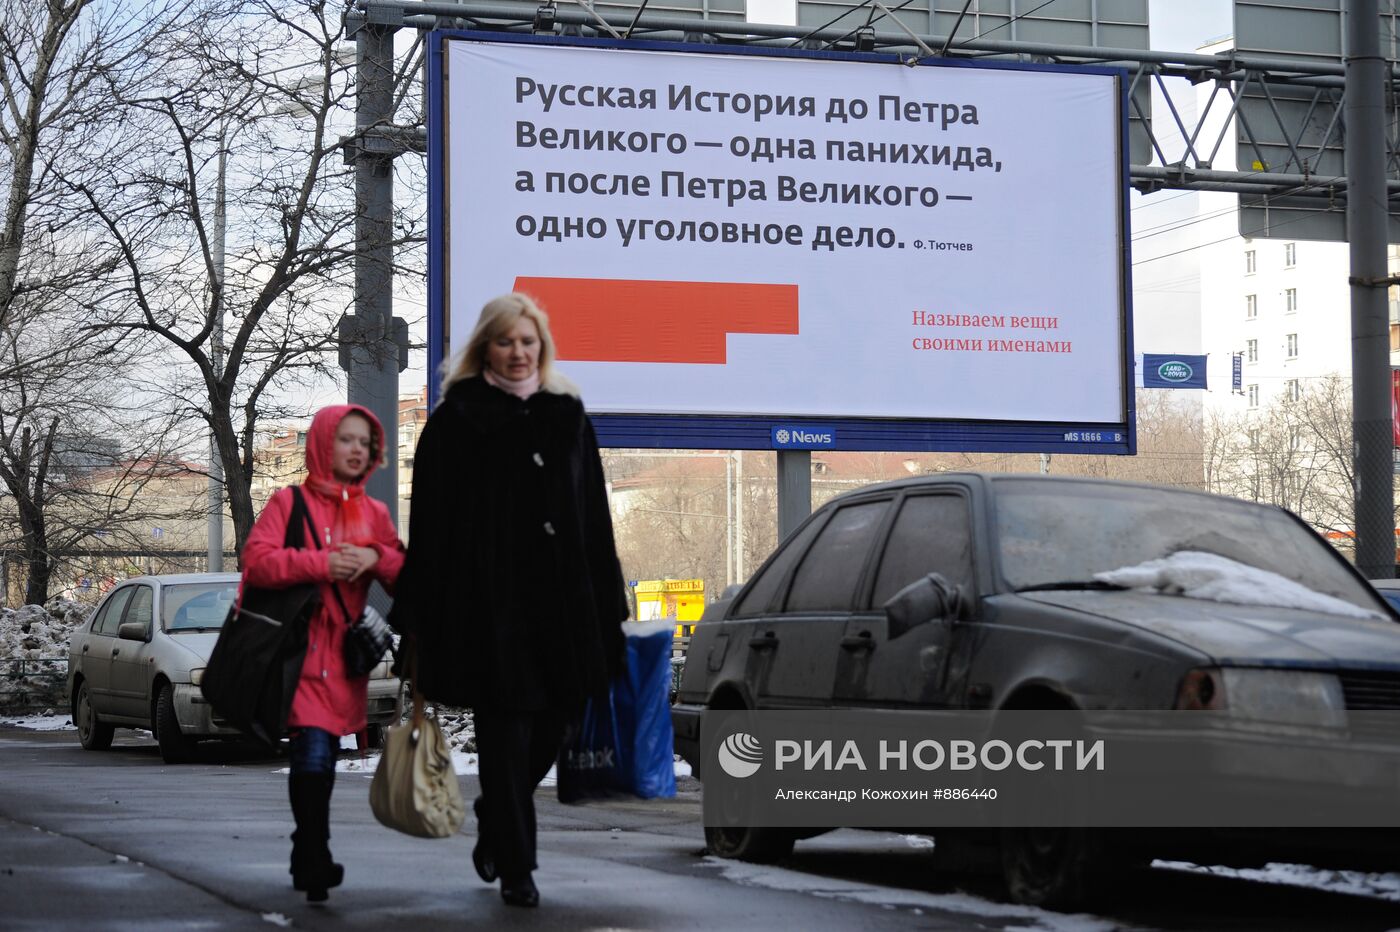 Биллборд газеты "Московские новости" в центре Москвы